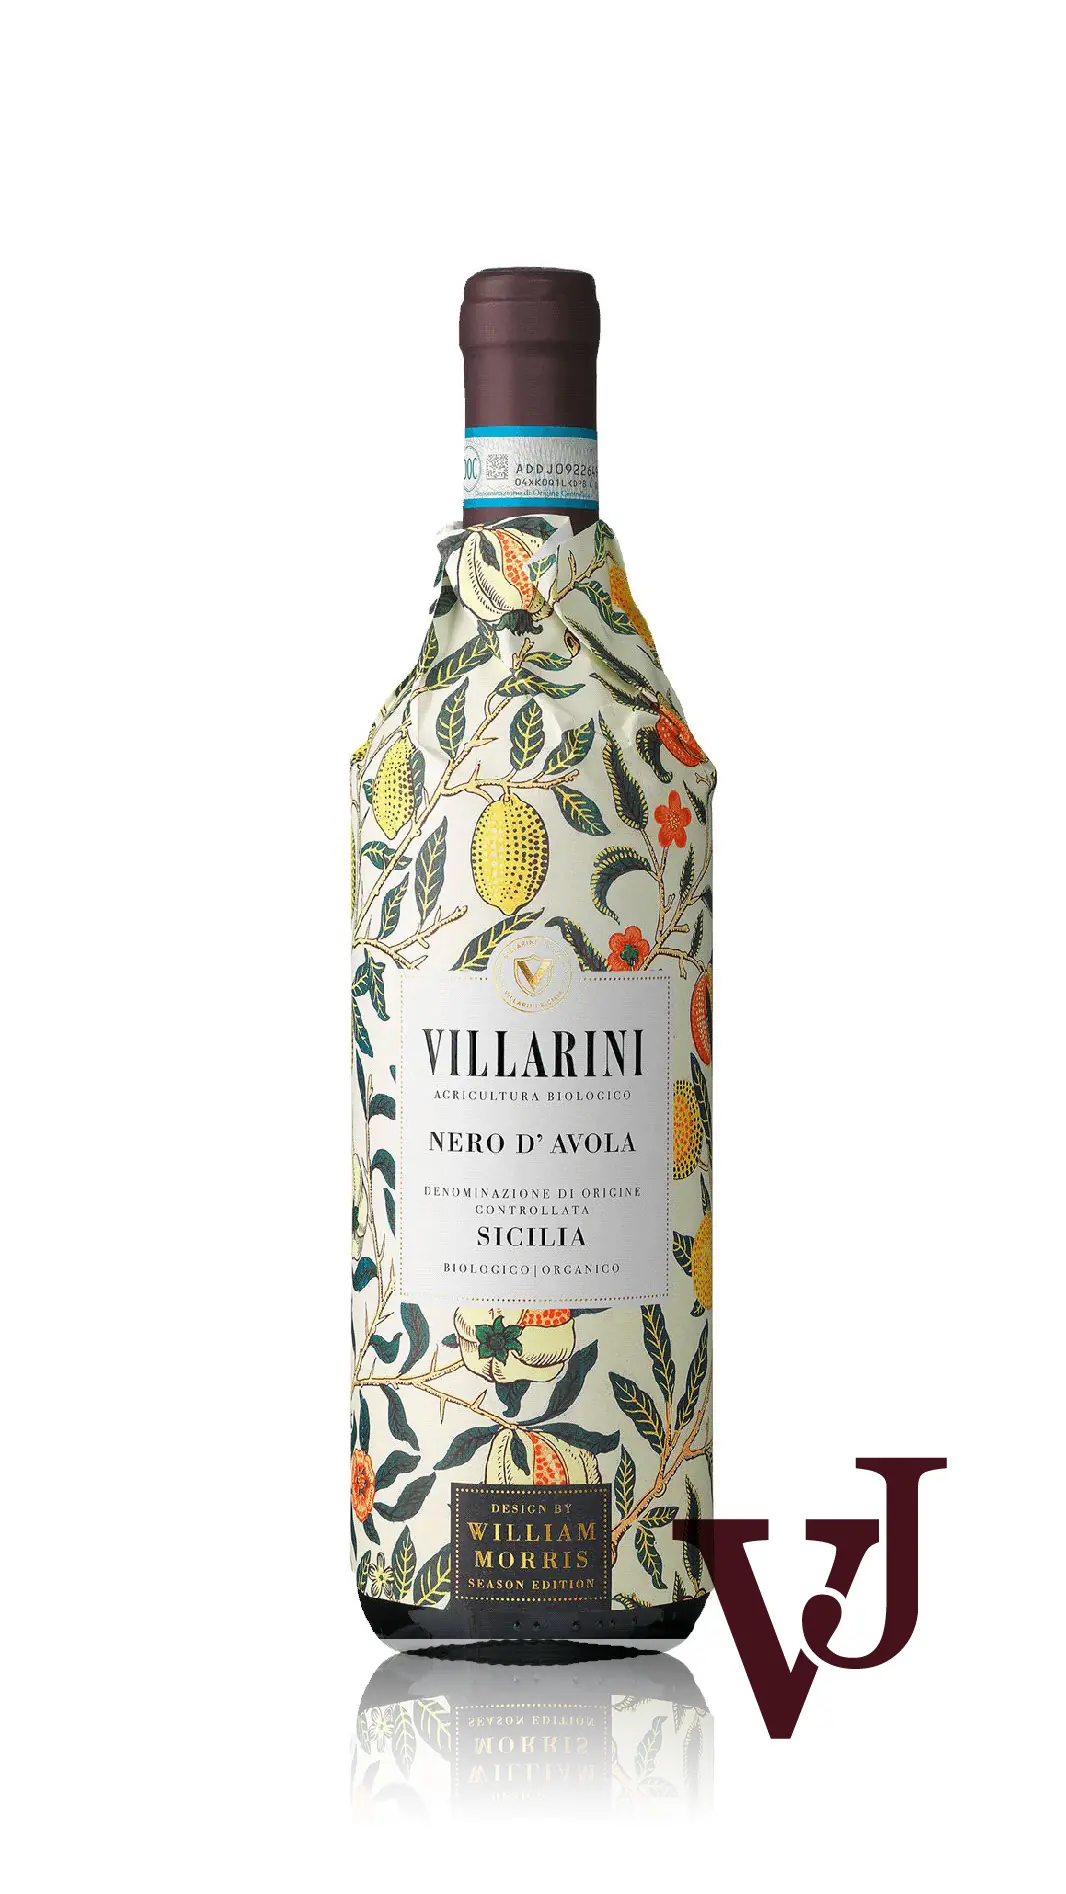 Rött Vin - Villarini Nero d'Avola artikel nummer 7528501 från producenten Icon Wines från området Italien - Vinjournalen.se